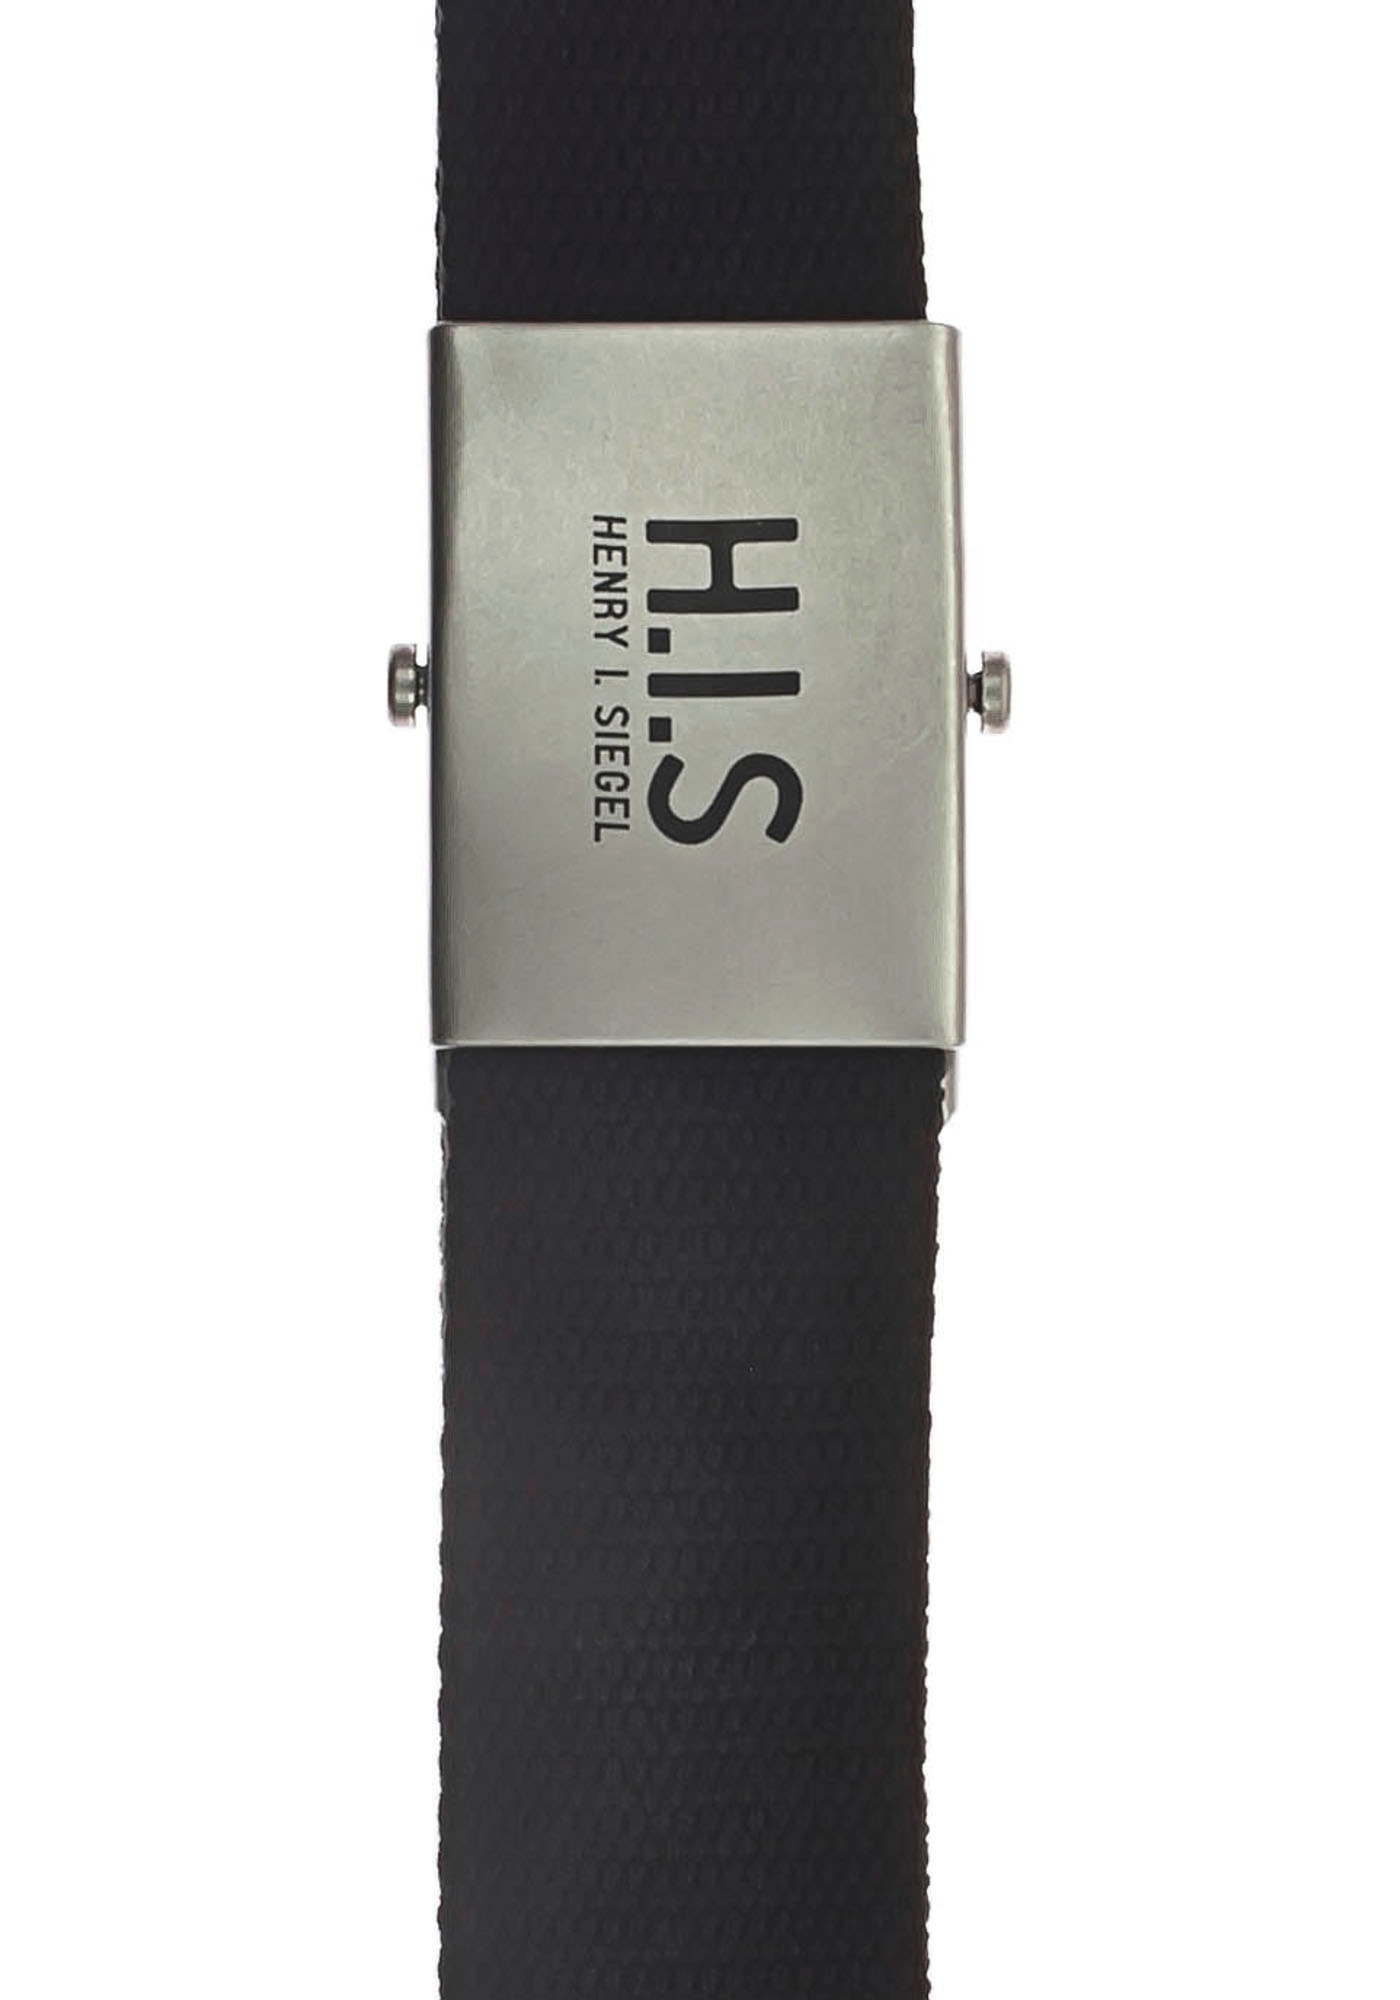 H.I.S Stoffgürtel, Bandgürtel mit H.I.S Logo auf der Koppelschliesse